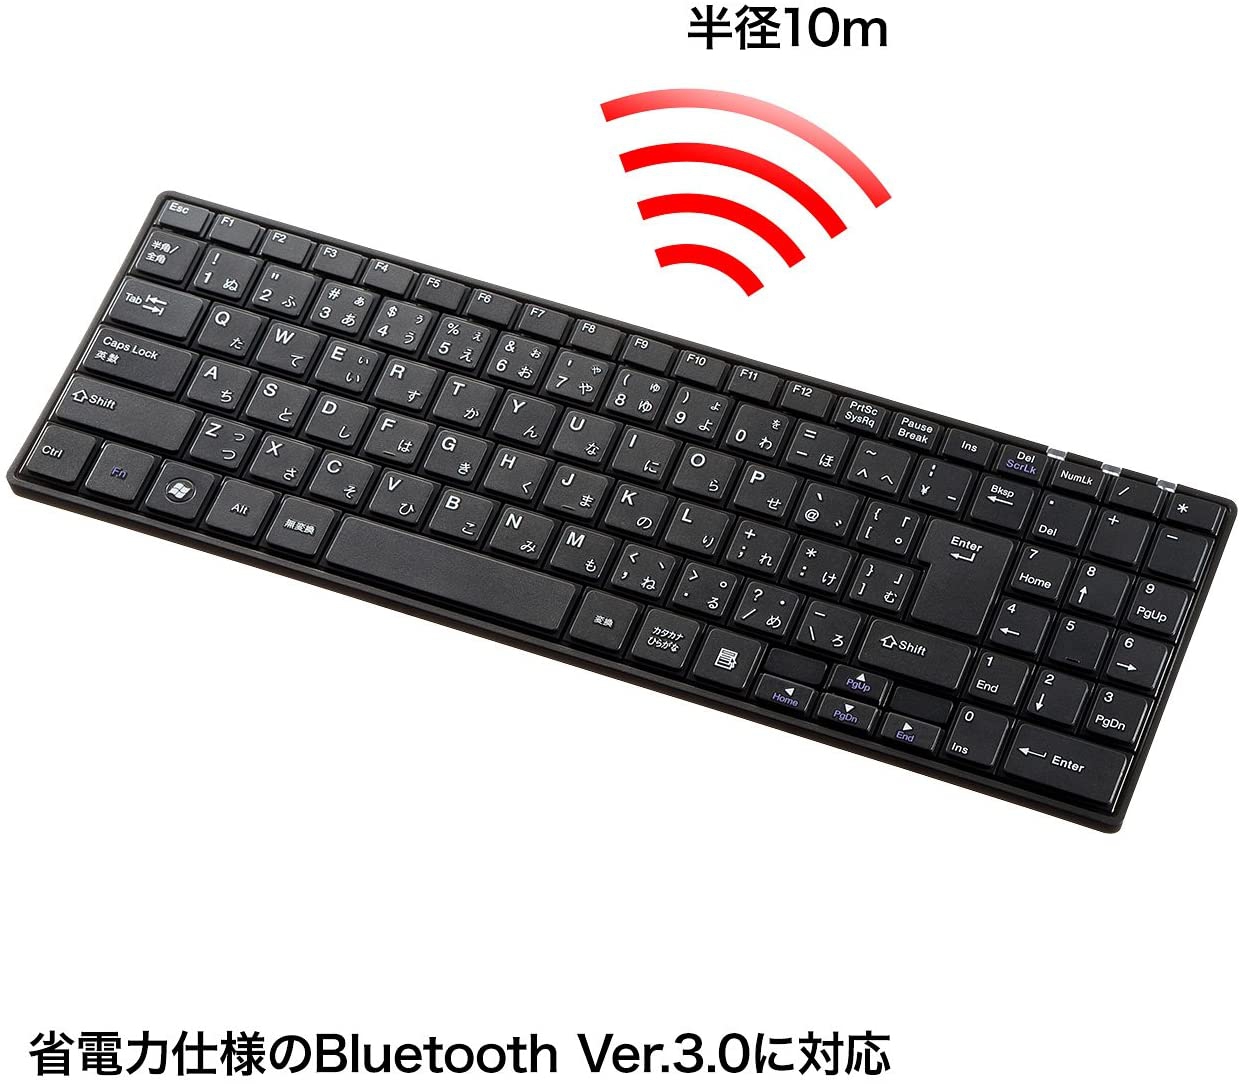 SANWA SUPPLY(サンワサプライ) Bluetoothスリムキーボード SKB-BT22BKの商品画像2 